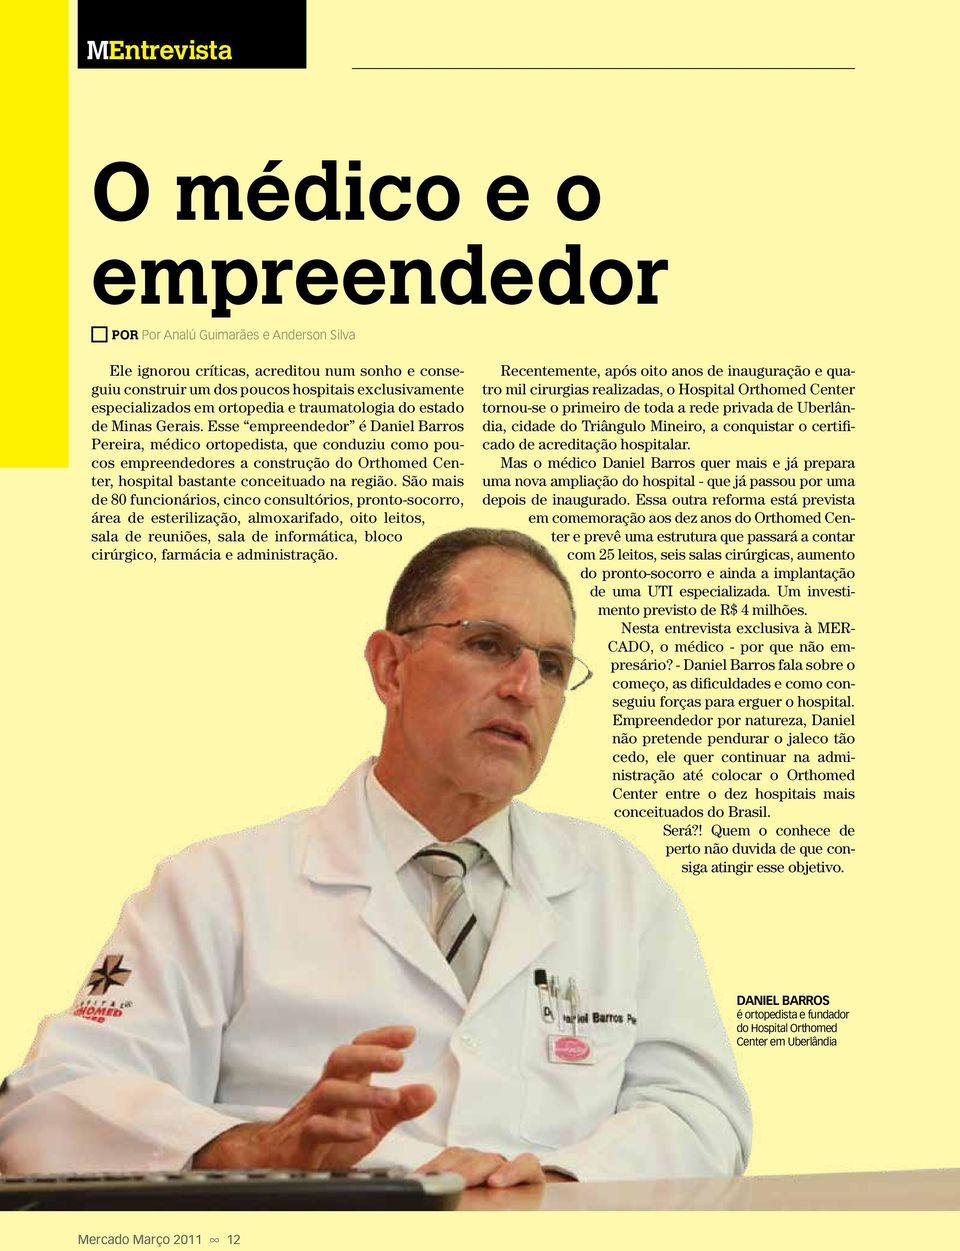 Esse empreendedor é Daniel Barros Pereira, médico ortopedista, que conduziu como poucos empreendedores a construção do Orthomed Center, hospital bastante conceituado na região.